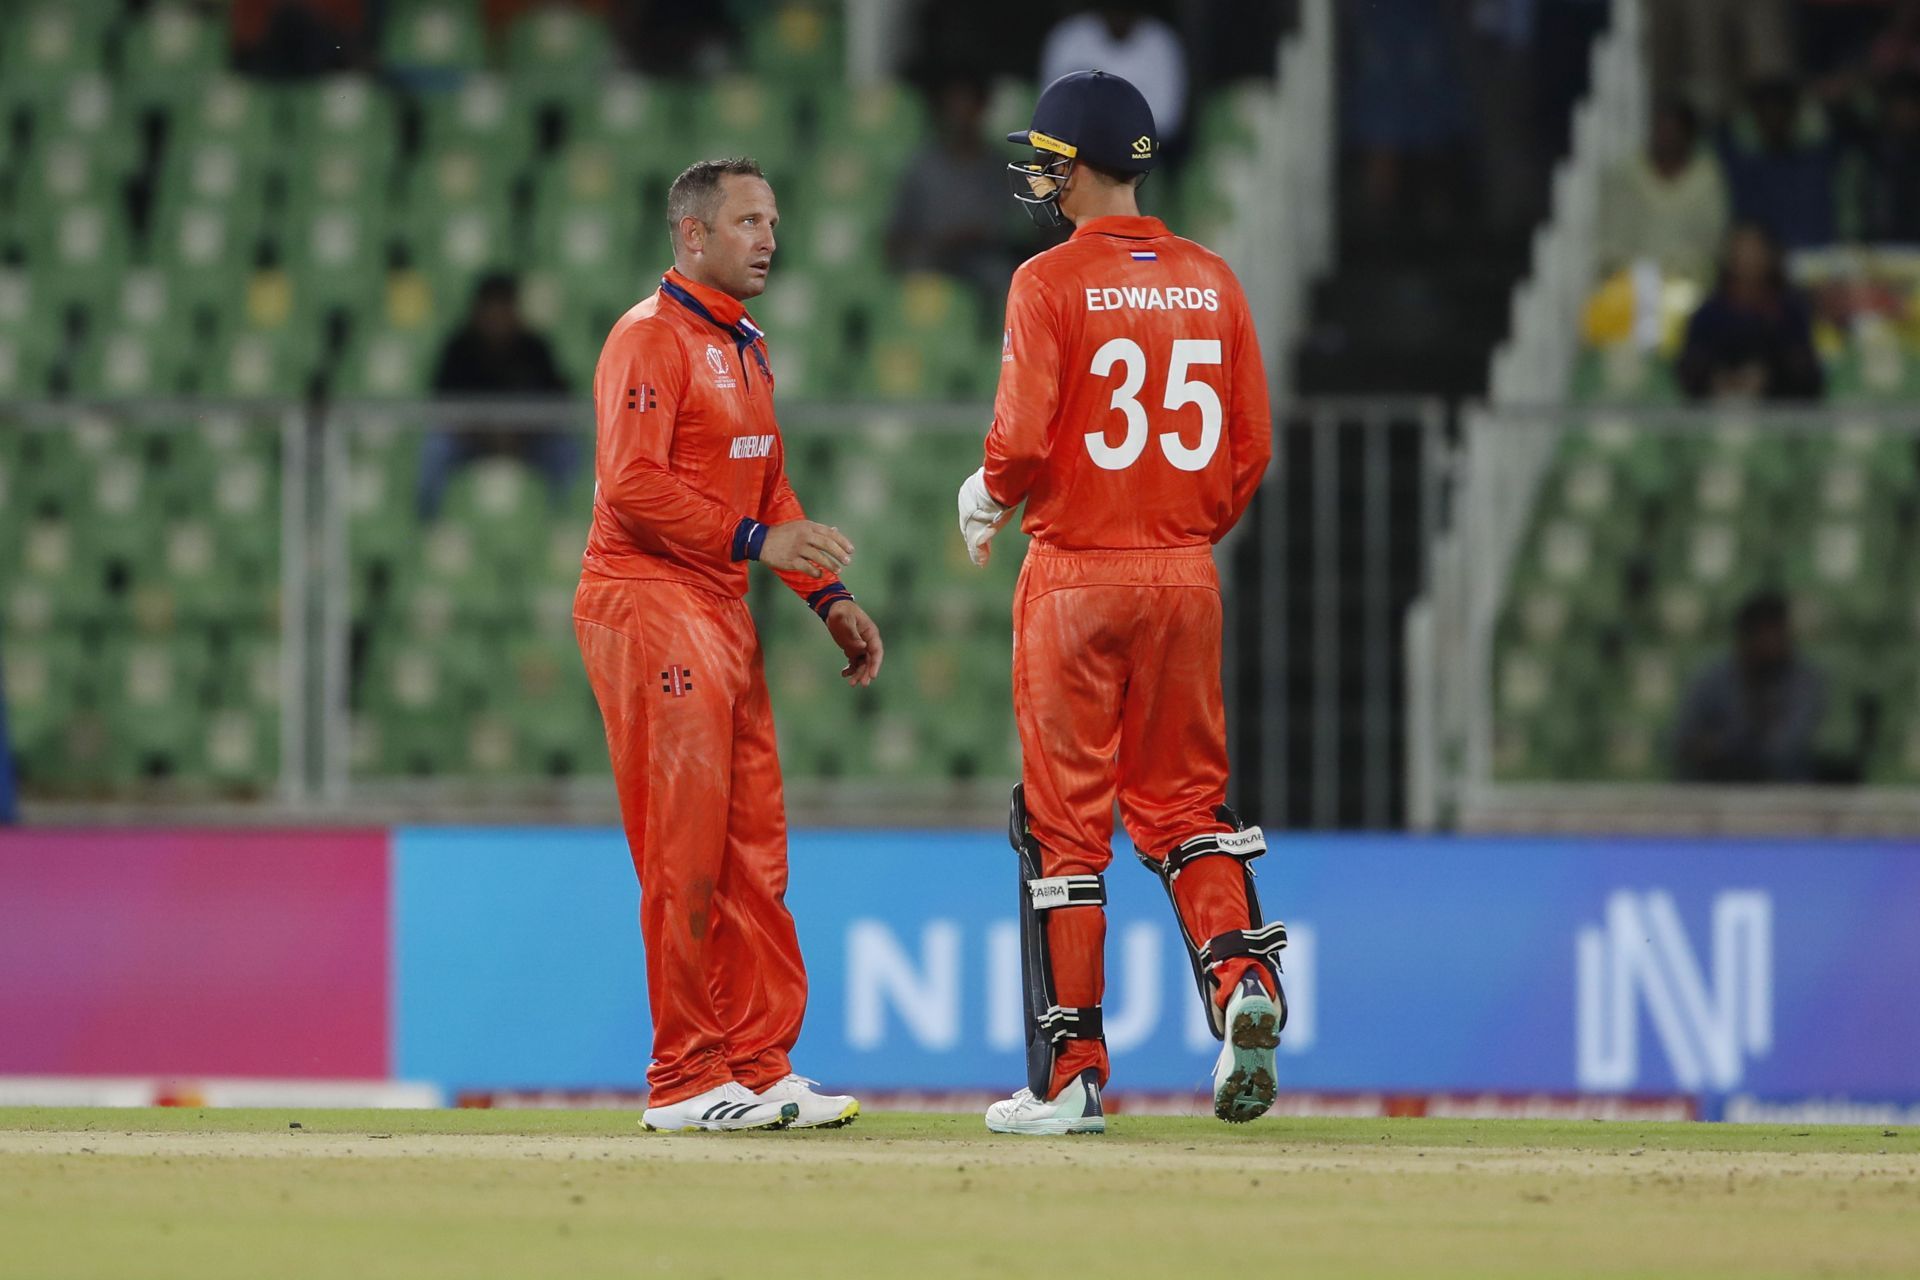 Roelof van der Merwe has played 2 ODIs in India in the past